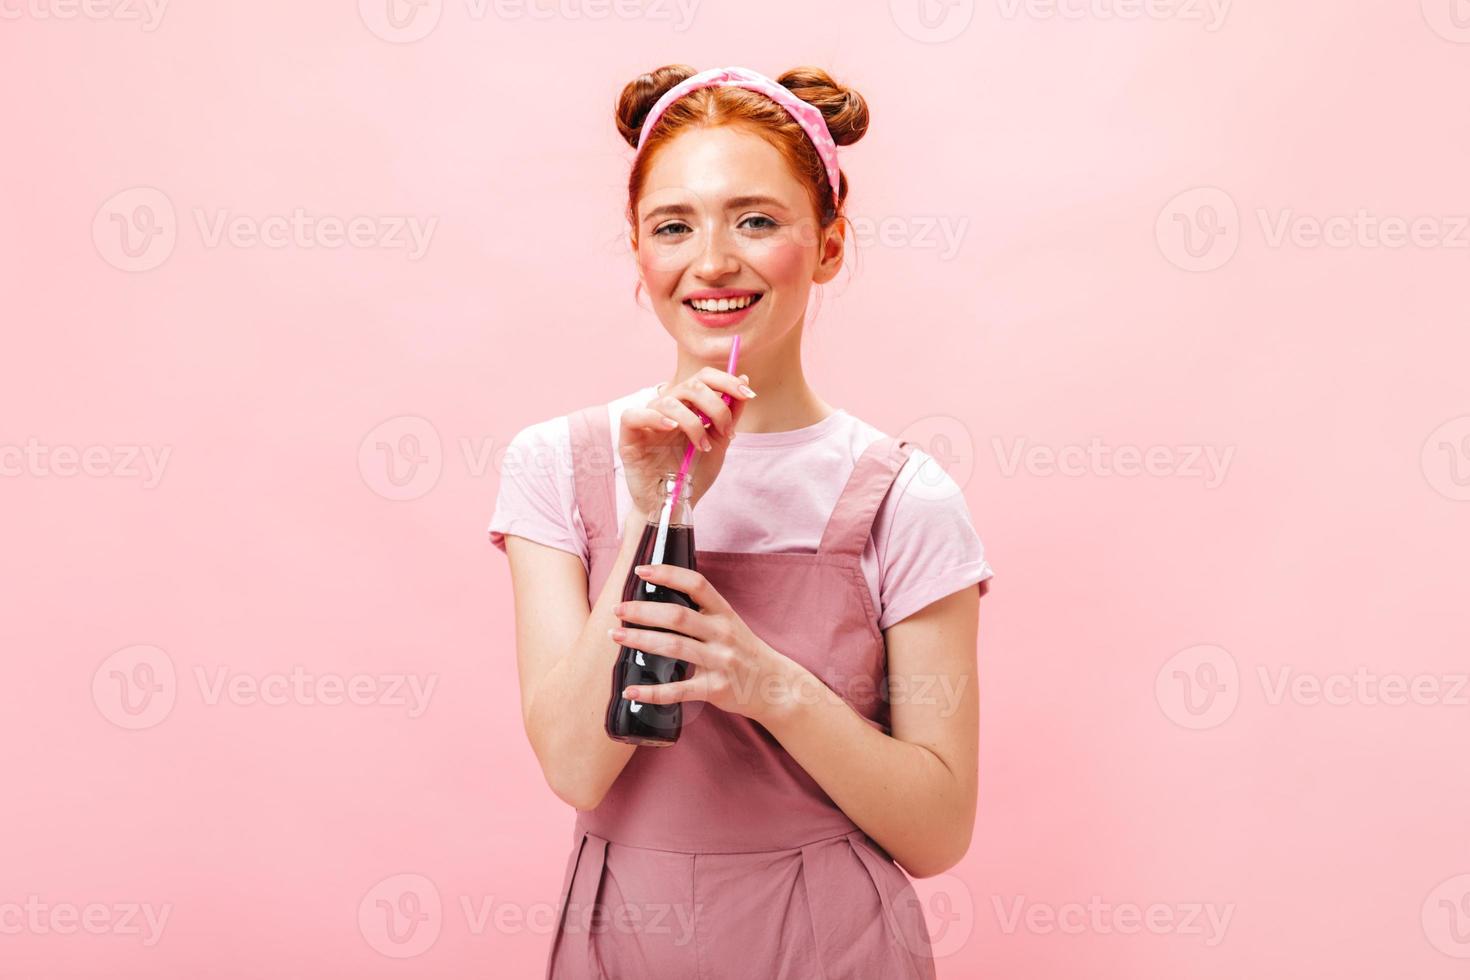 joyeuse jeune femme en robe rose montre un signe de paix, sourit et tient une bouteille de soda sur zone rose photo